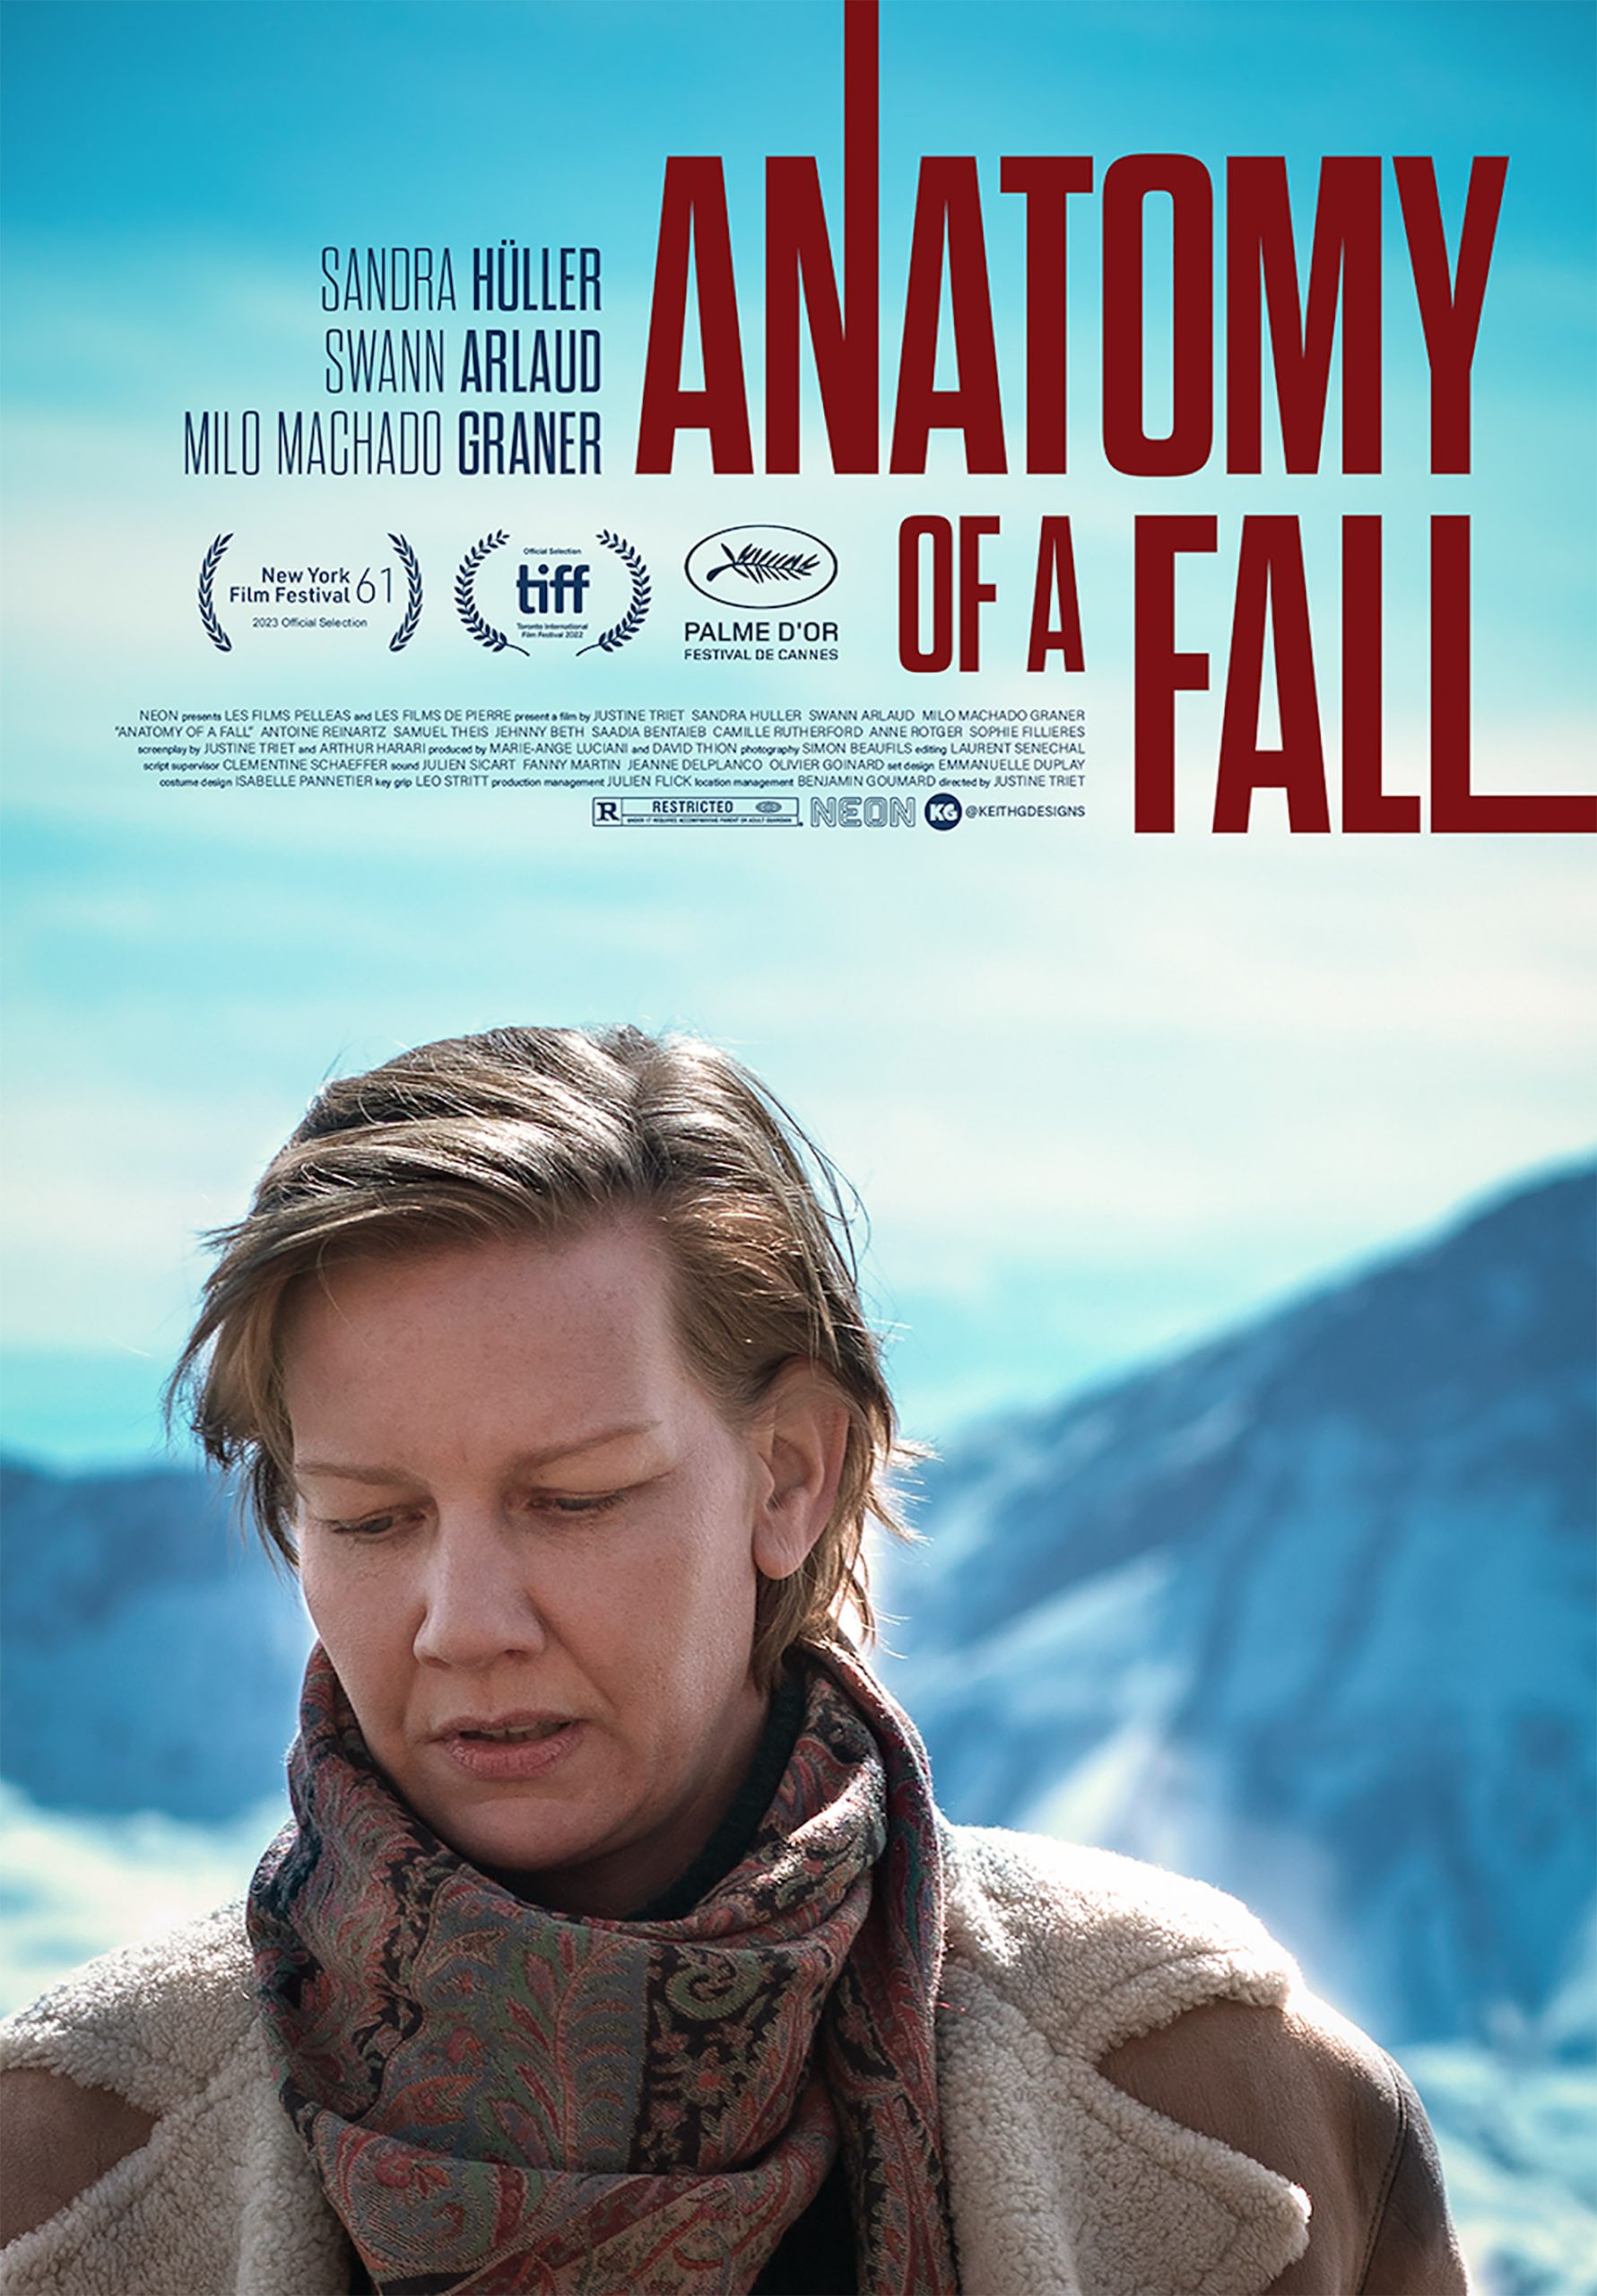 bộ phim điện ảnh anatomy of a fall